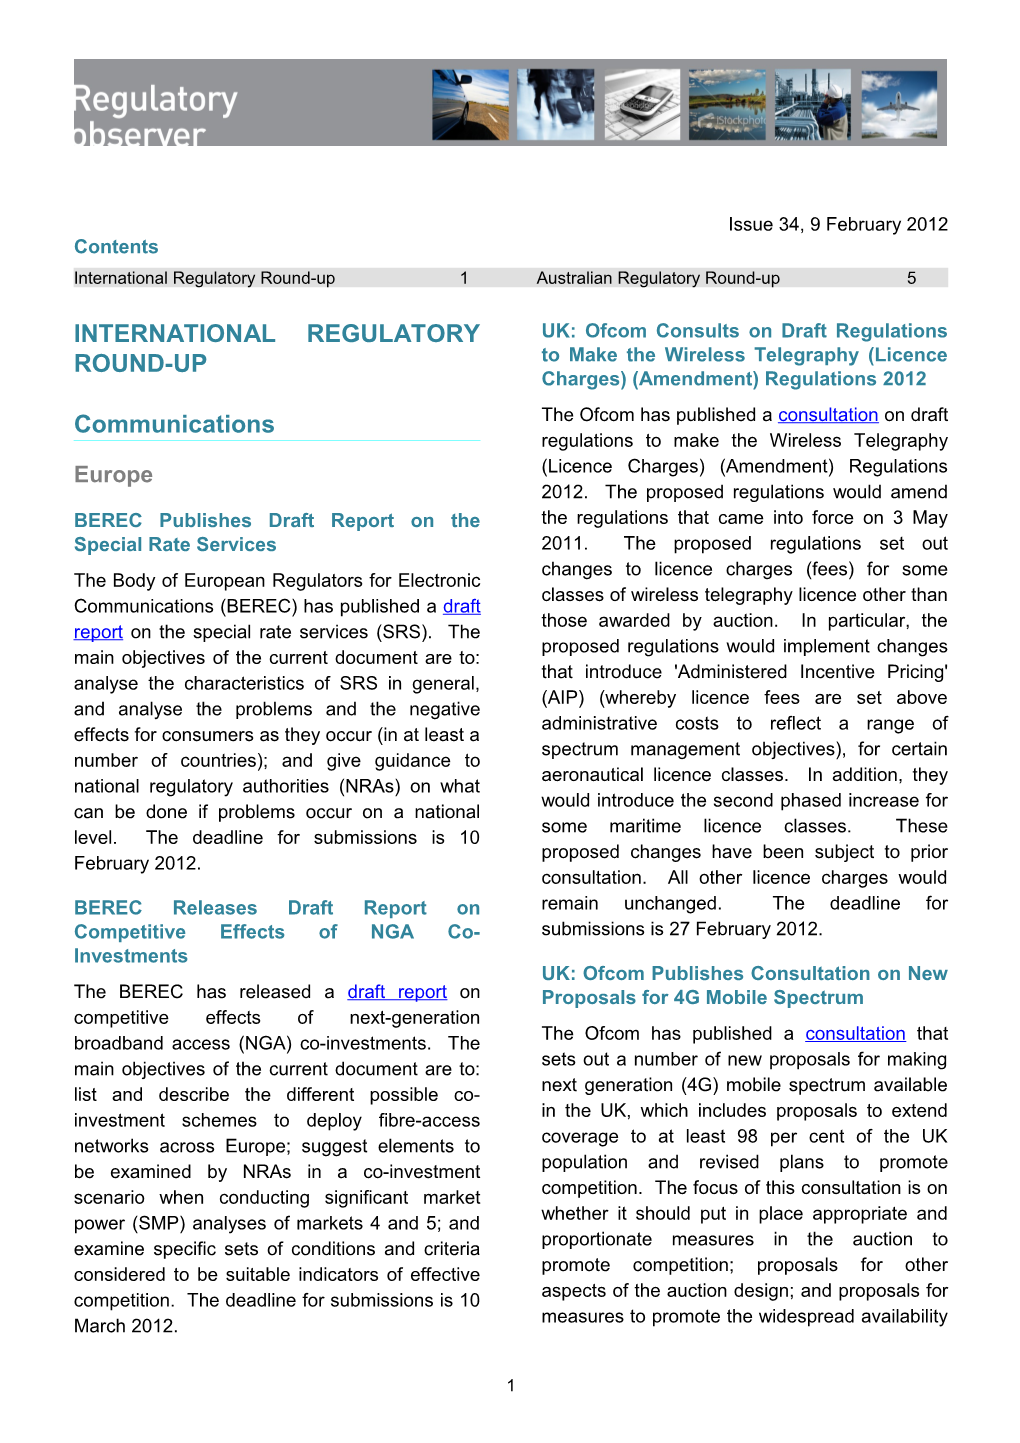 Regulatory Observer Issue 34 9 February 2012